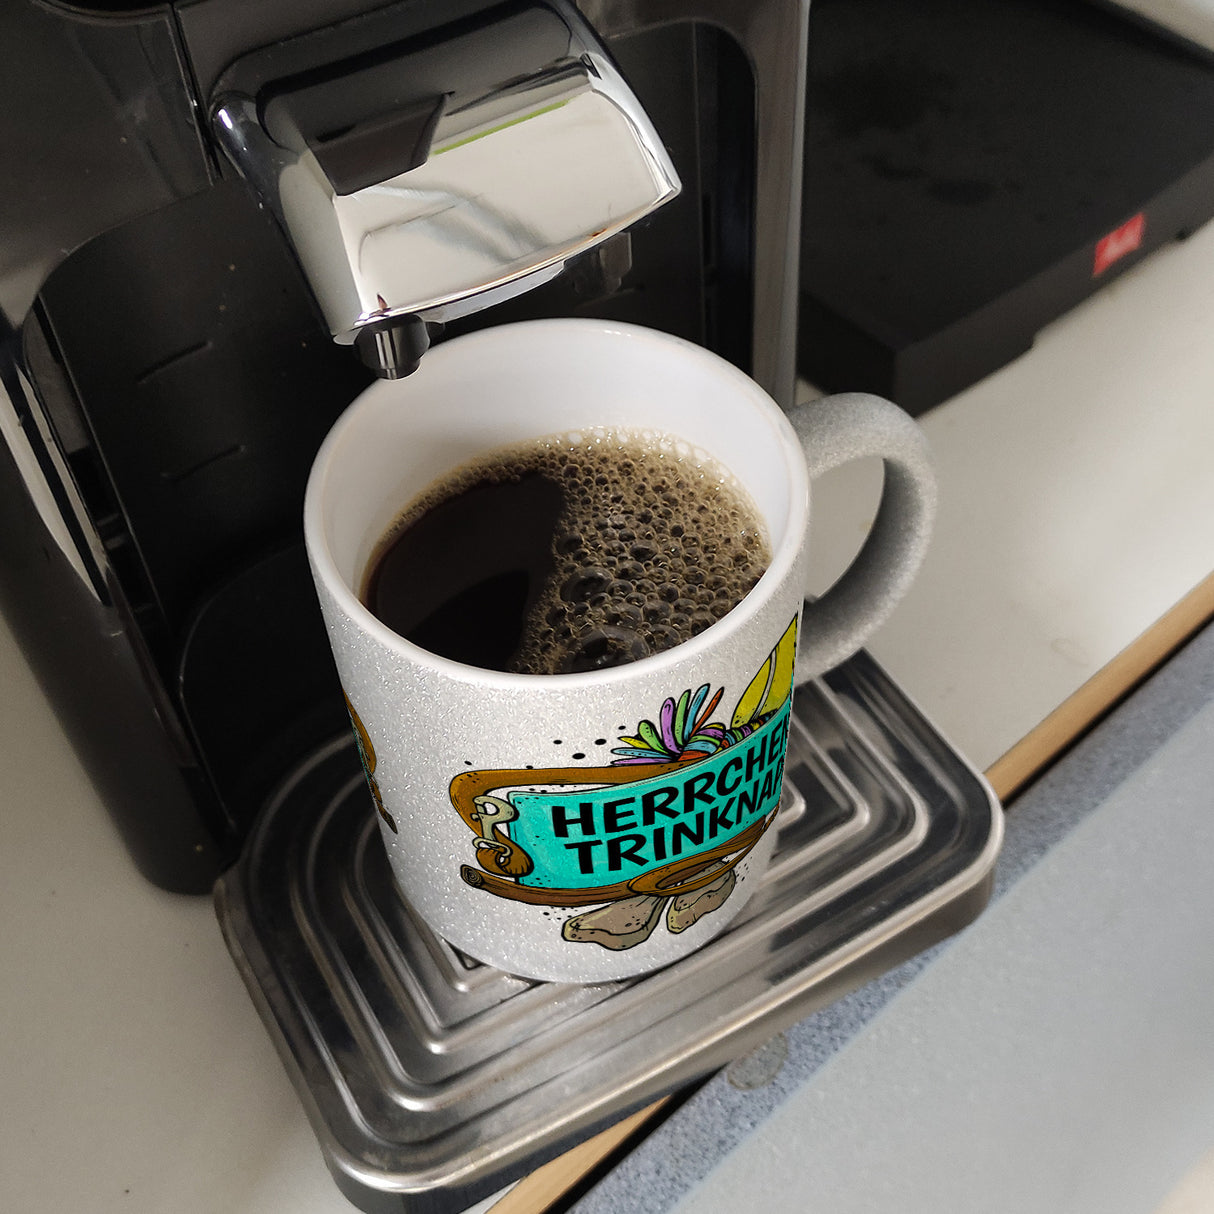 Herrchens Trinknapf Kaffeebecher